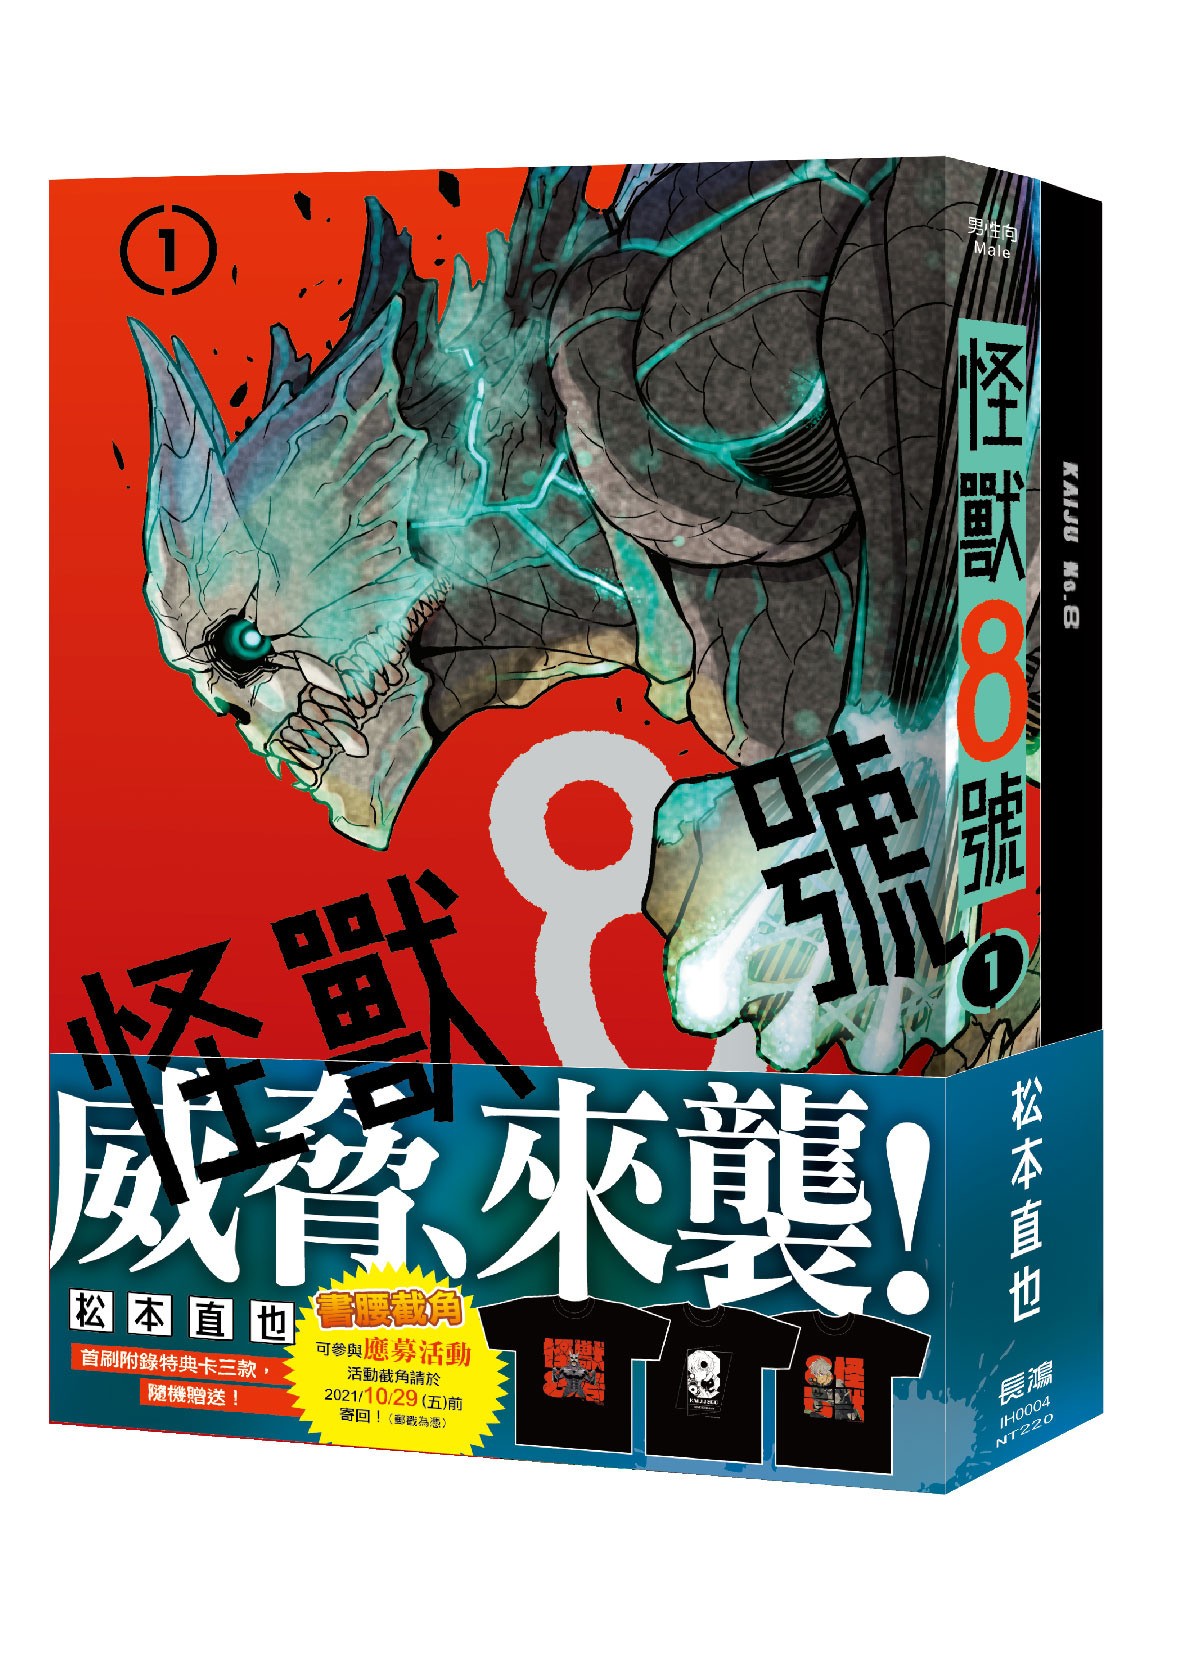 少年 Jump+ 話題作《怪獸 8 號》漫畫即日起開放網路預購 29 日在台上市